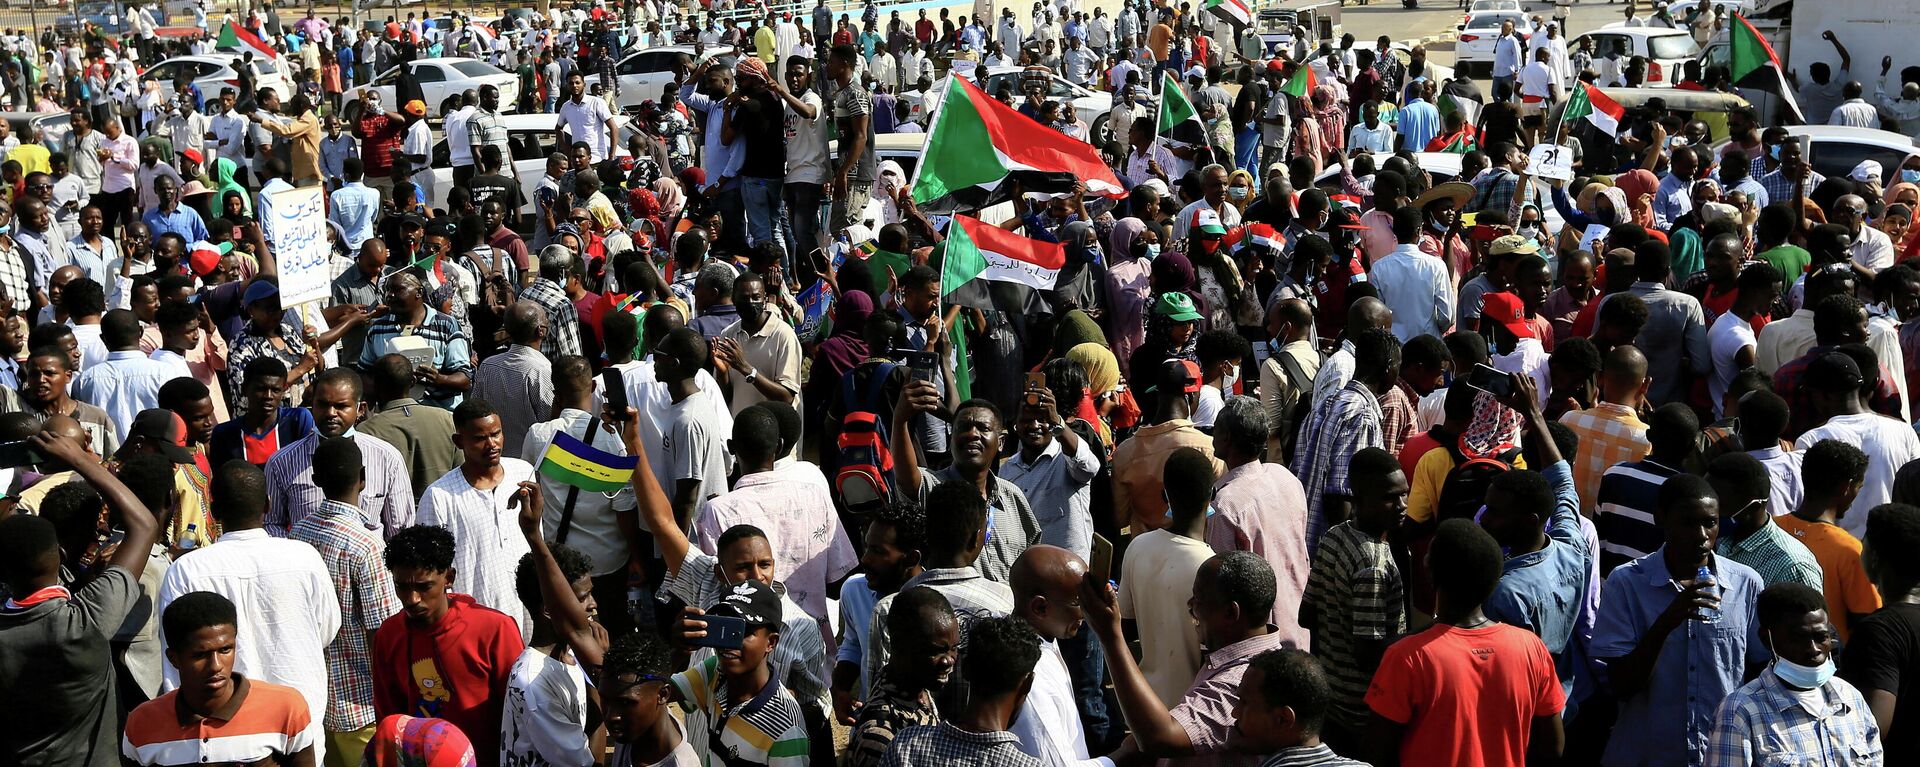 Una protesta en Sudán - Sputnik Mundo, 1920, 25.10.2021